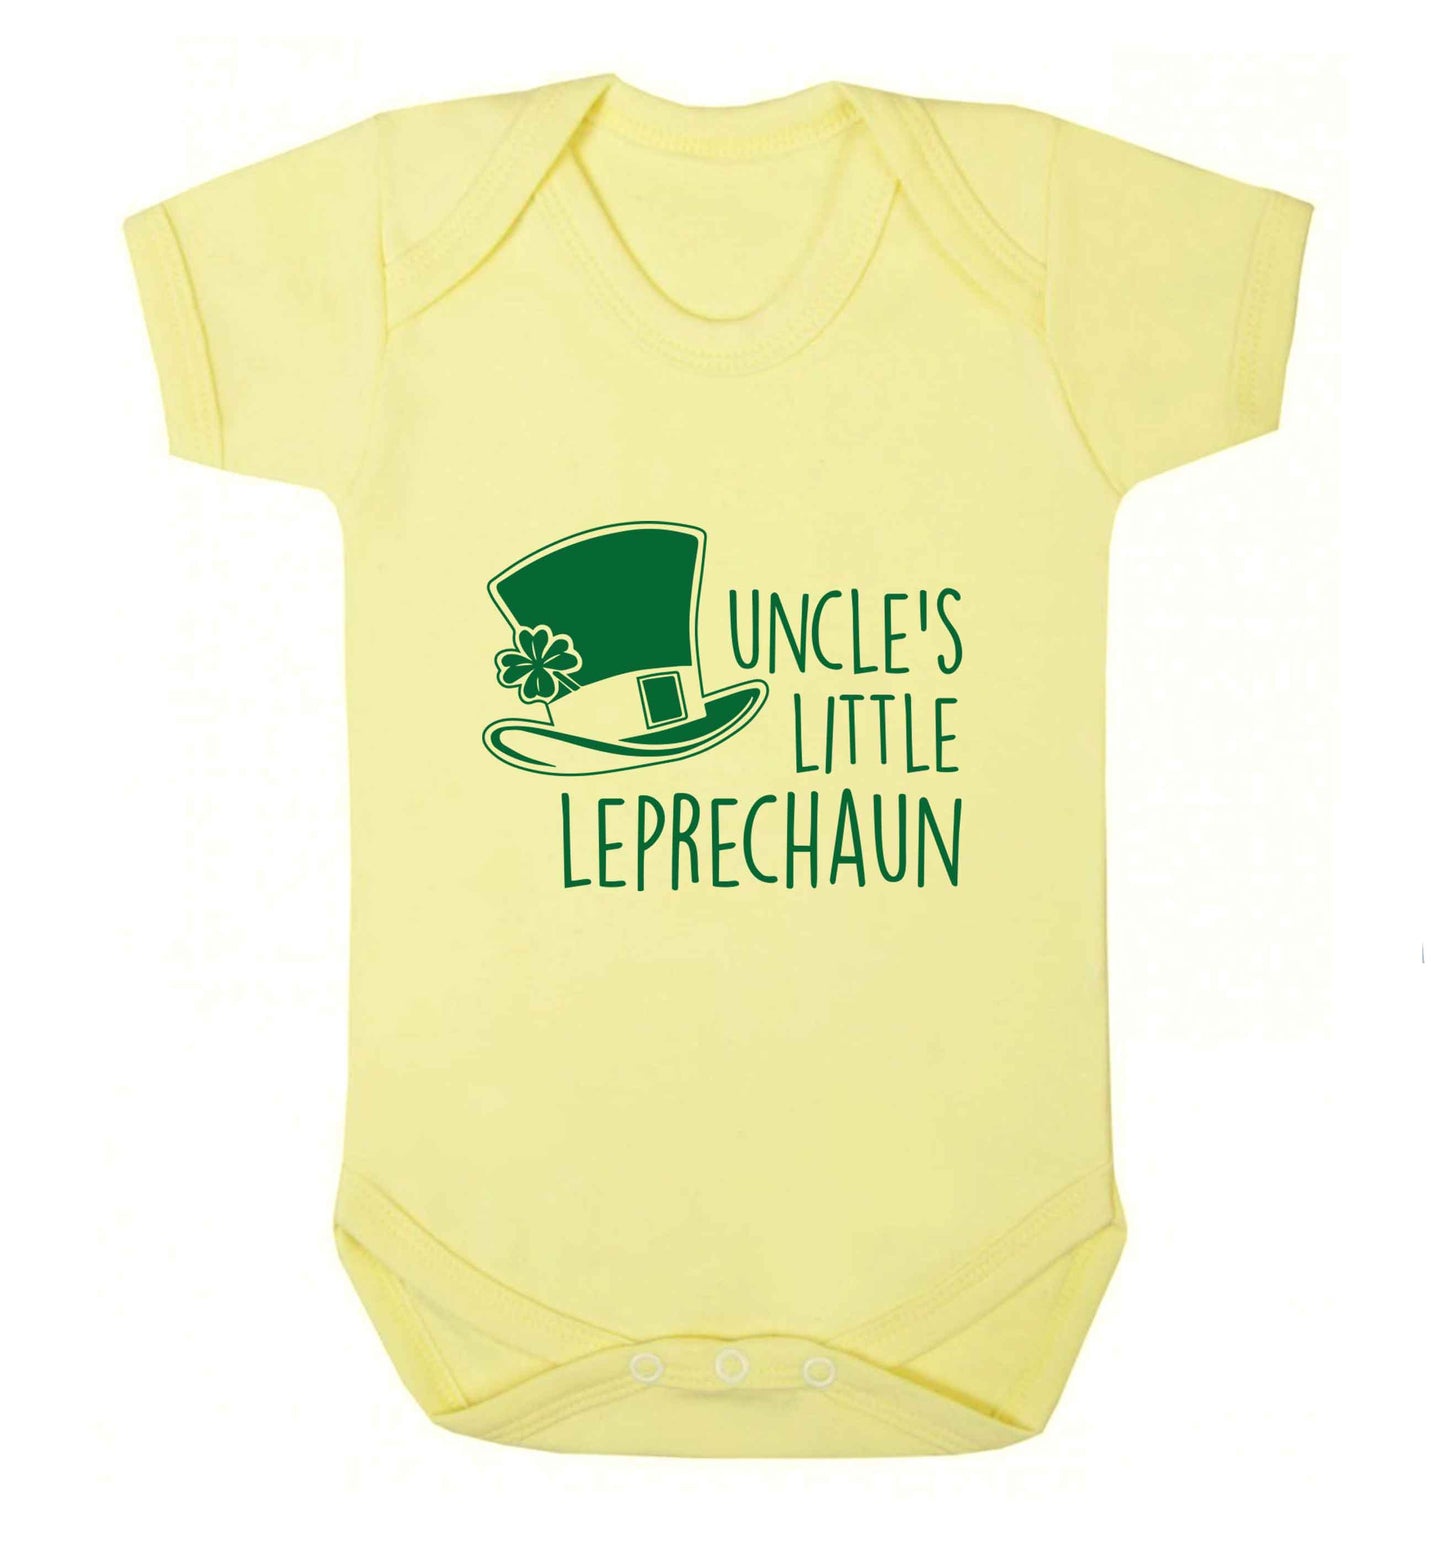 Uncles little leprechaun baby vest pale yellow 18-24 months